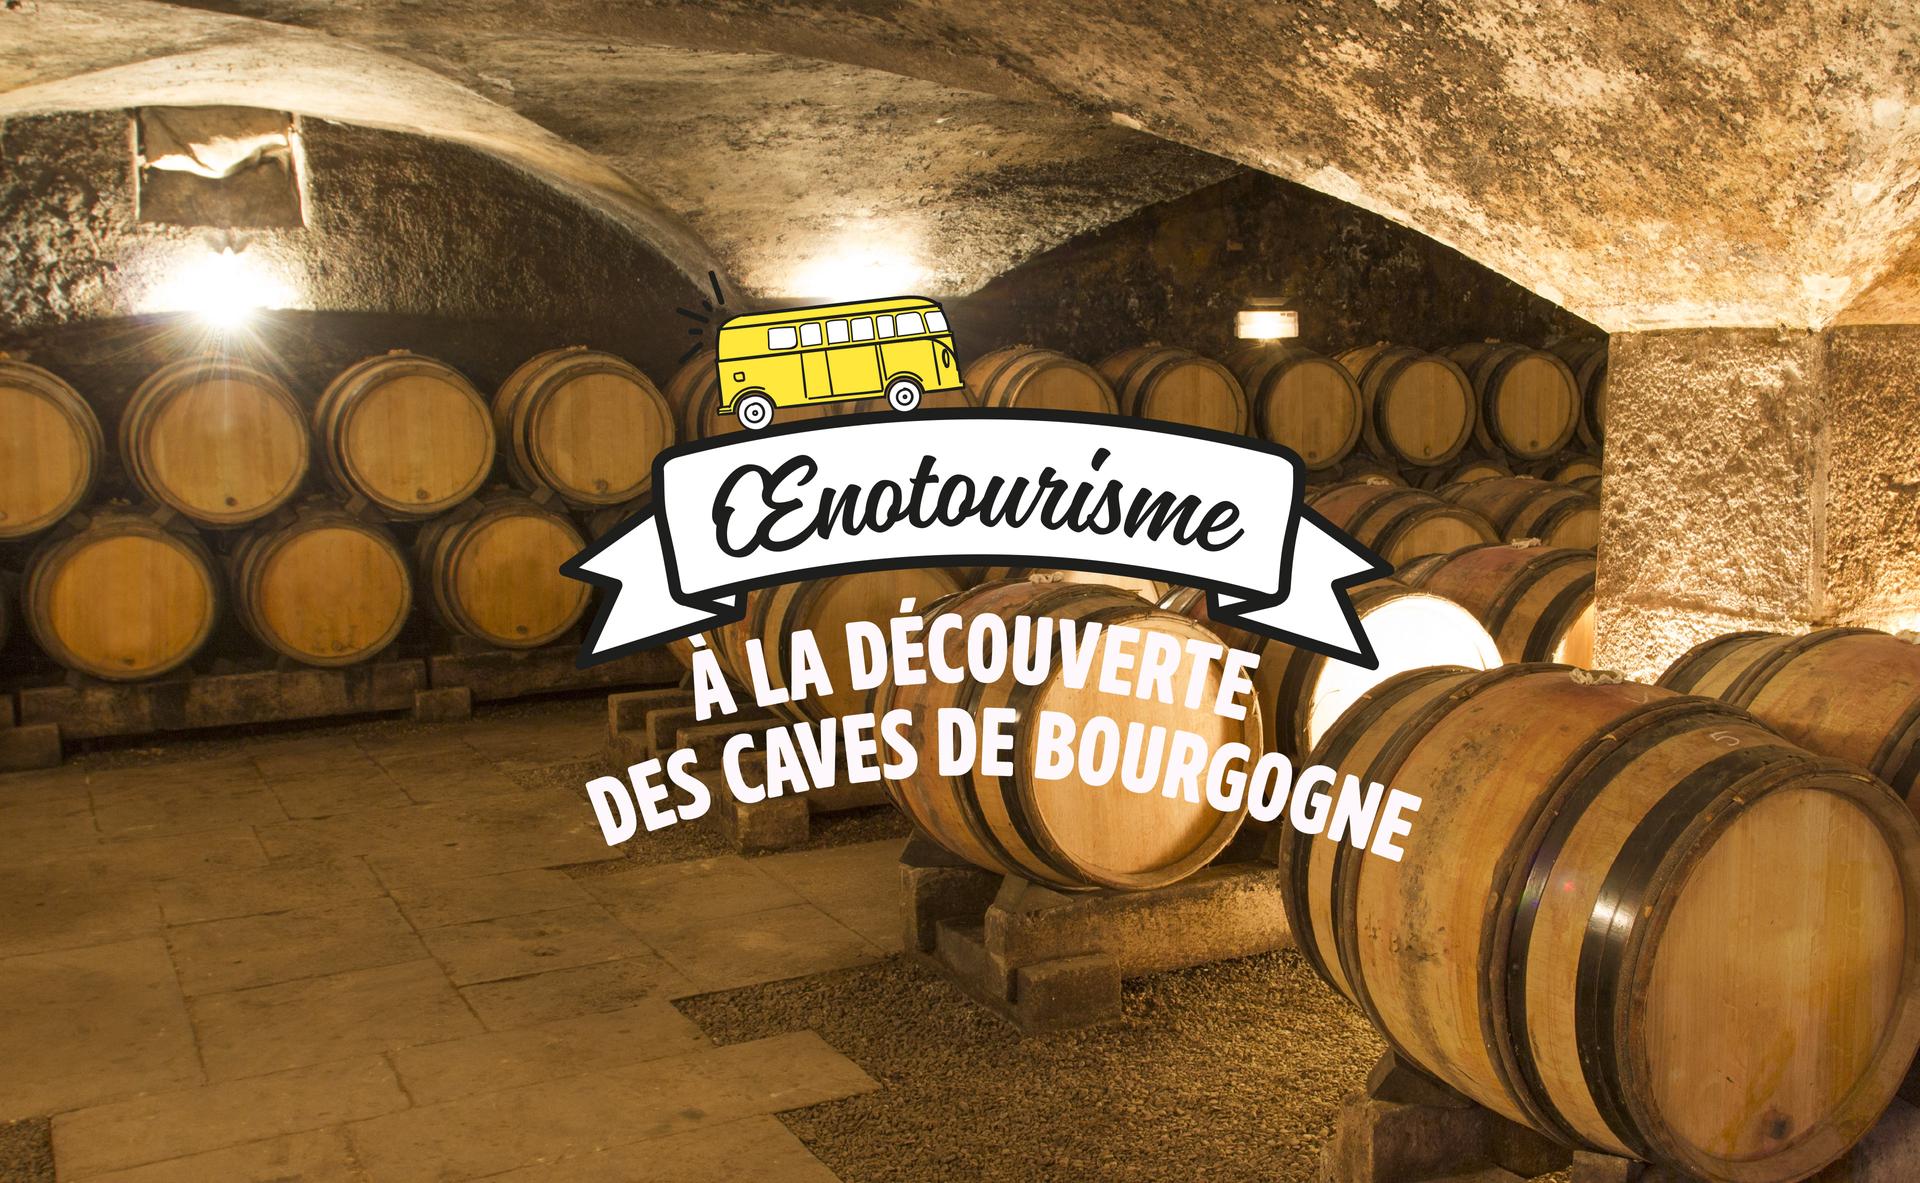 A la découverte des caves de Bourgogne